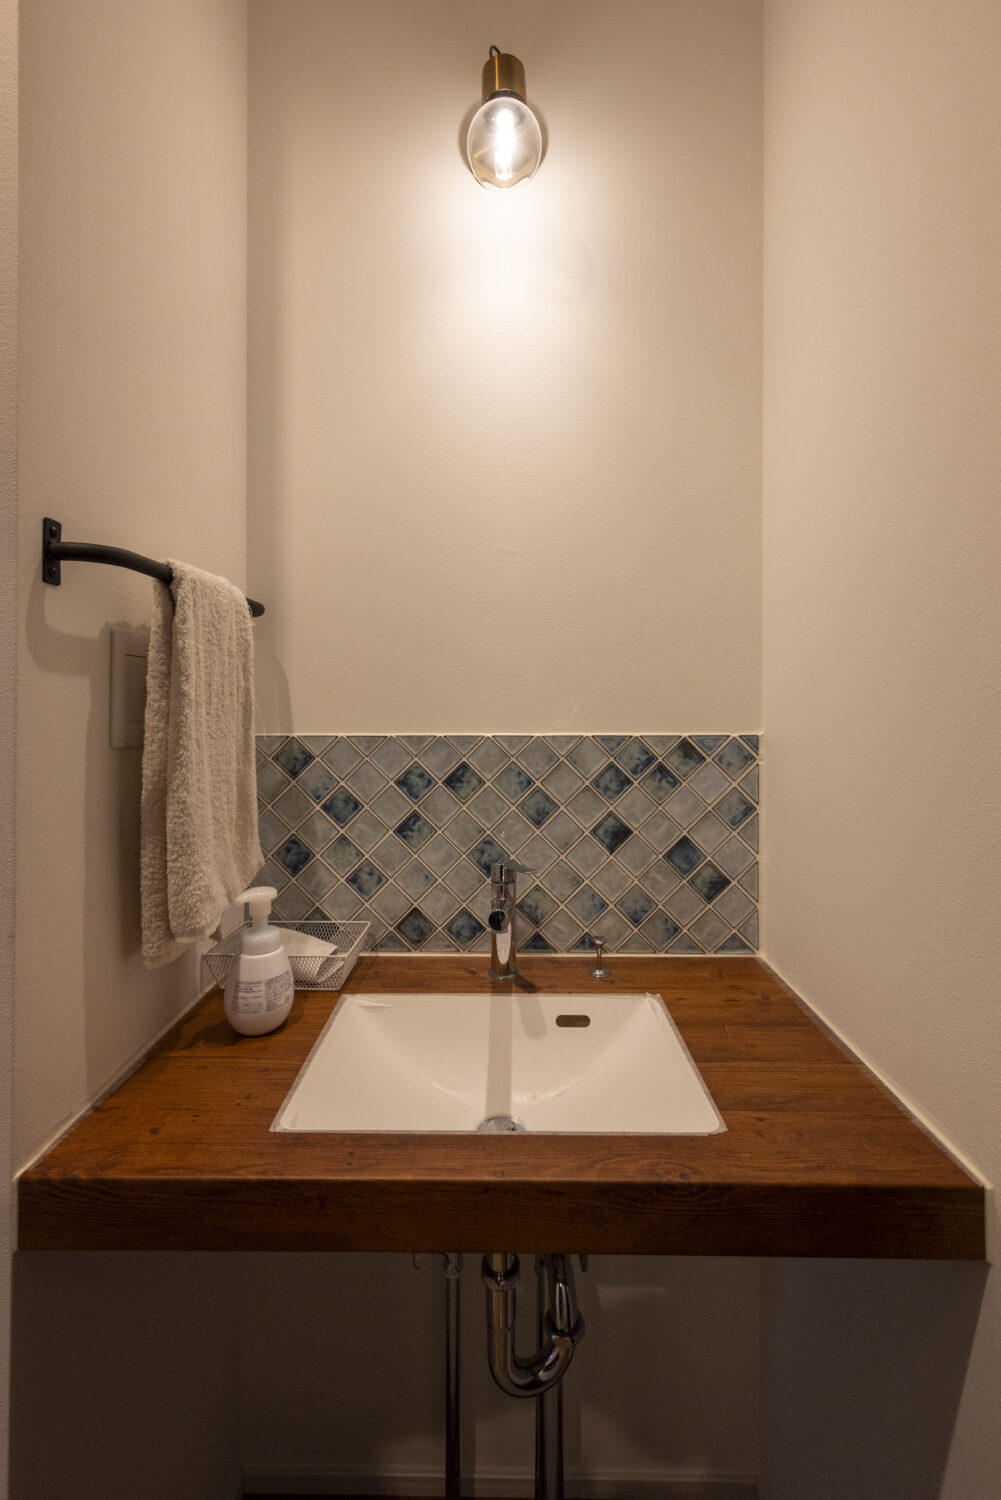 アイデザインホーム
三重の注文住宅　実例
木目のセカンド手洗いカウンターは淡いブルーのタイルが目を引く。
玄関から続くホールにあるため来客時や帰宅時に便利に活用できる。
アイアンのタオル掛けがアクセントとなっている。